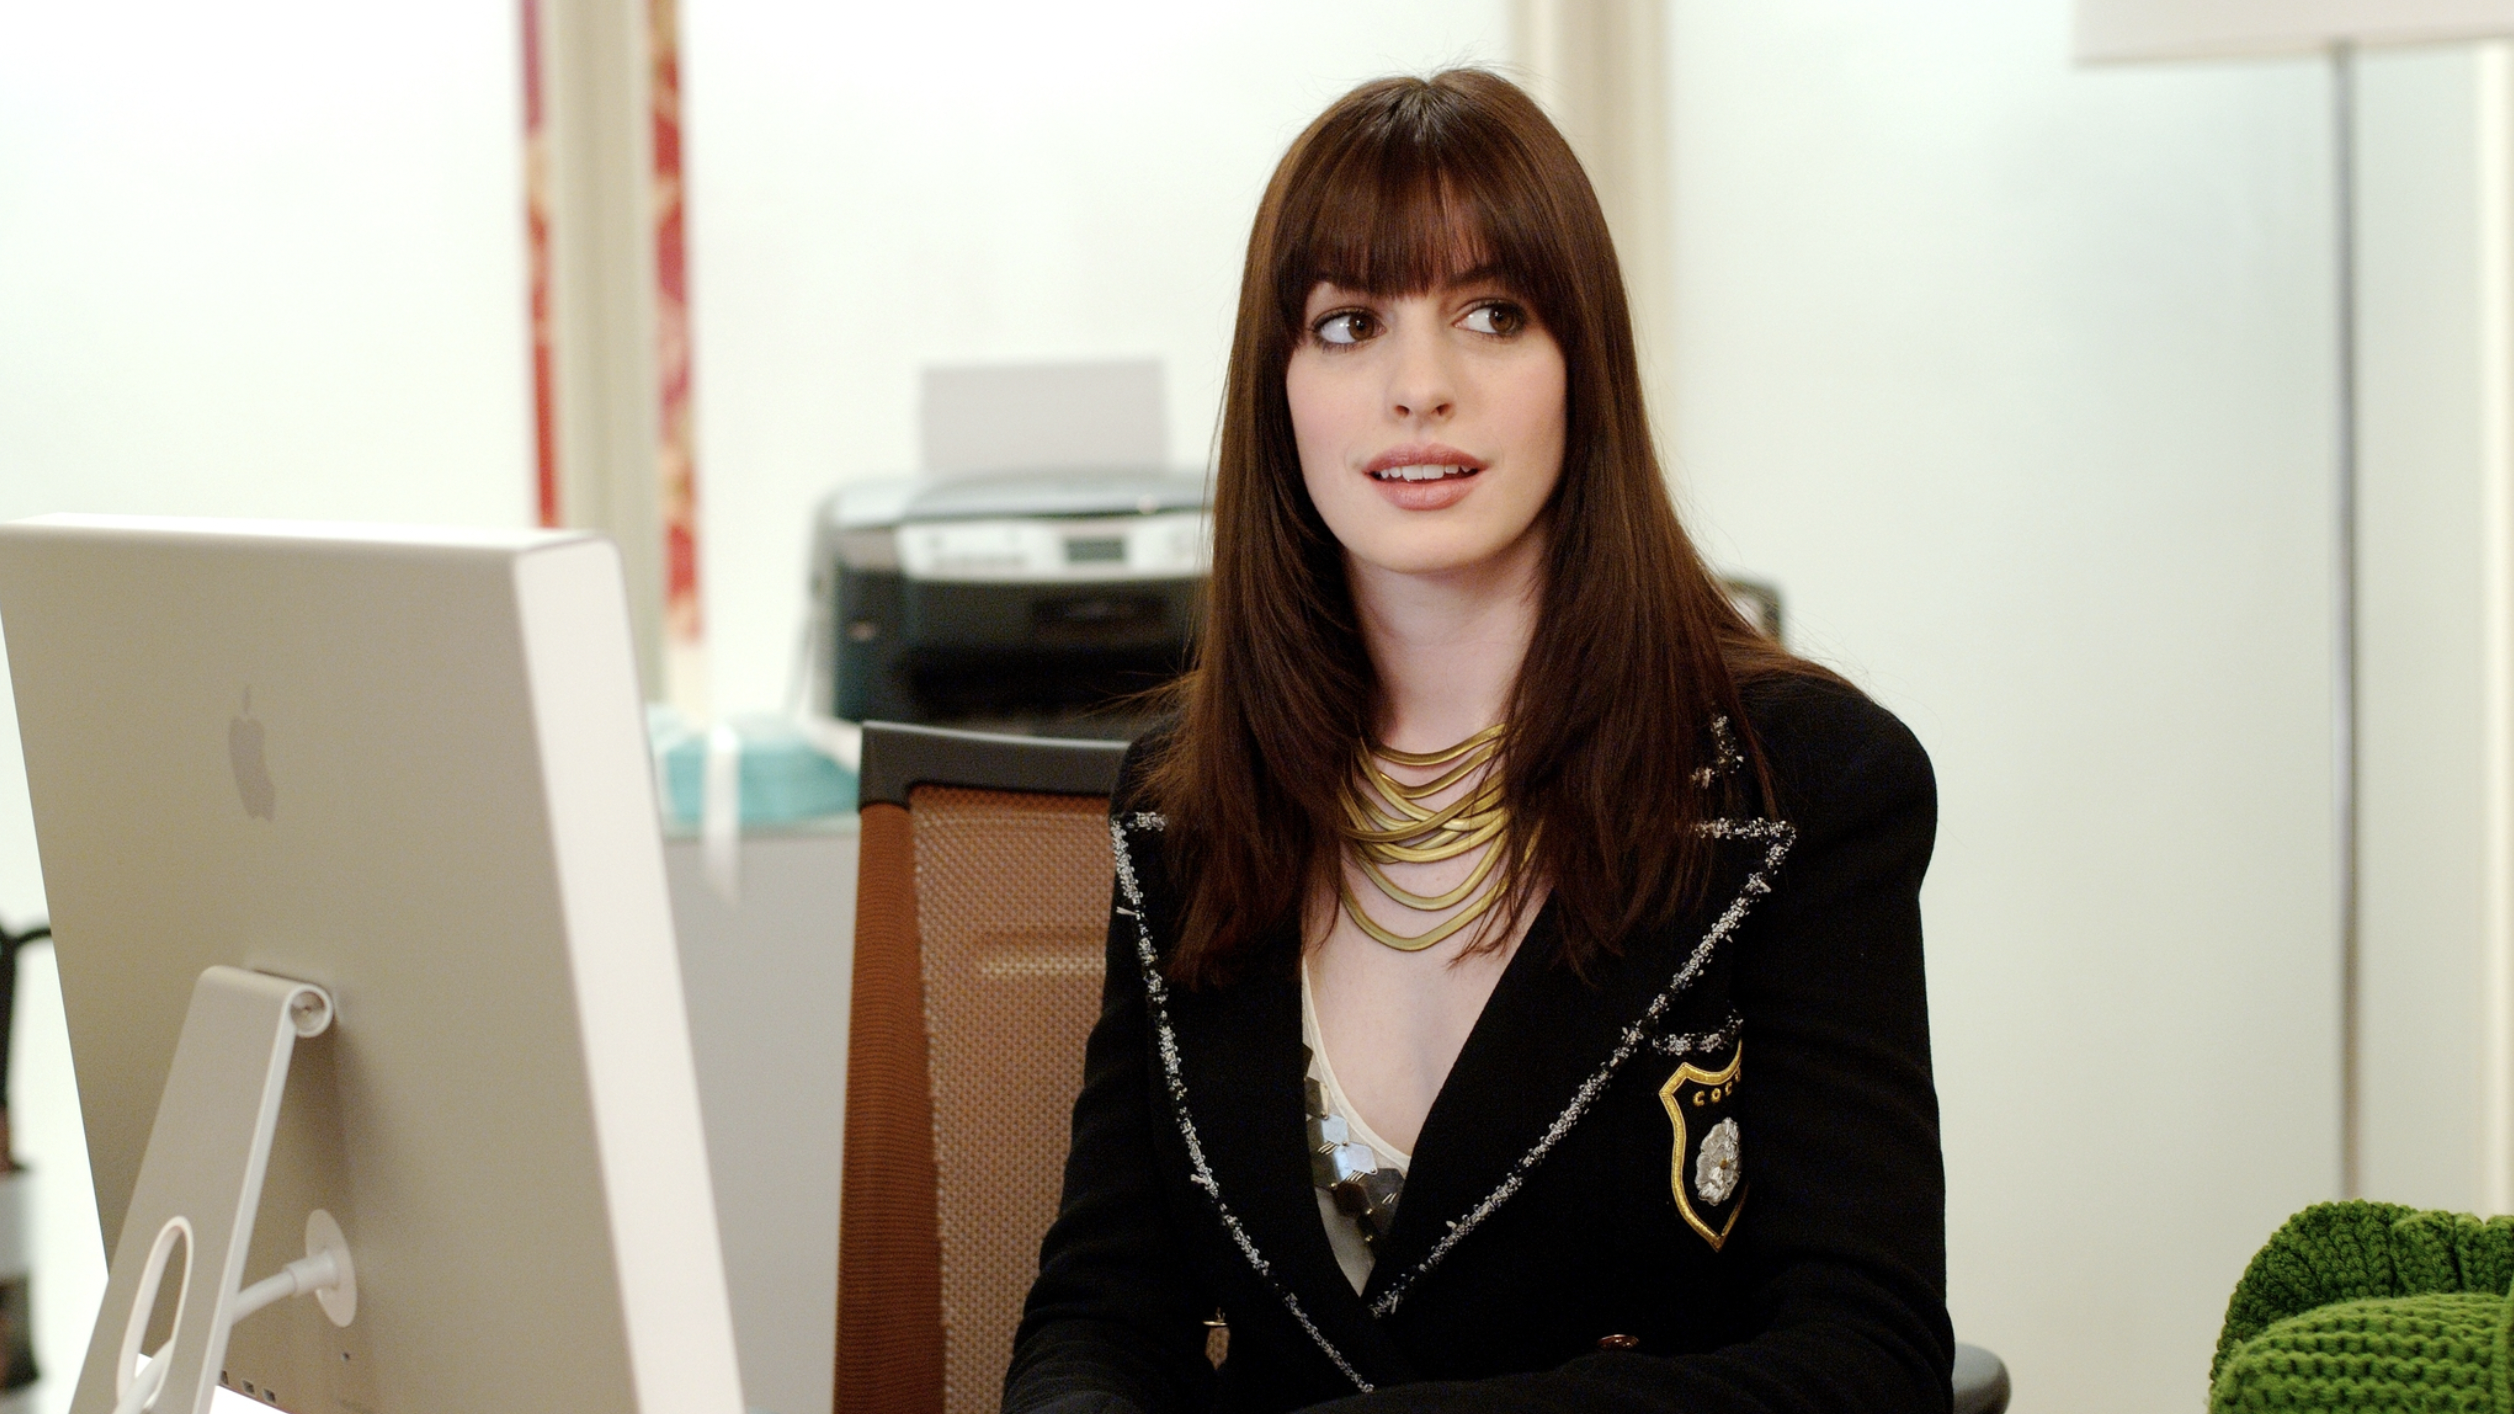 Anne Hathaway's Chanel Blazer in 'The Devil Wears Prada' Is on Farfetch